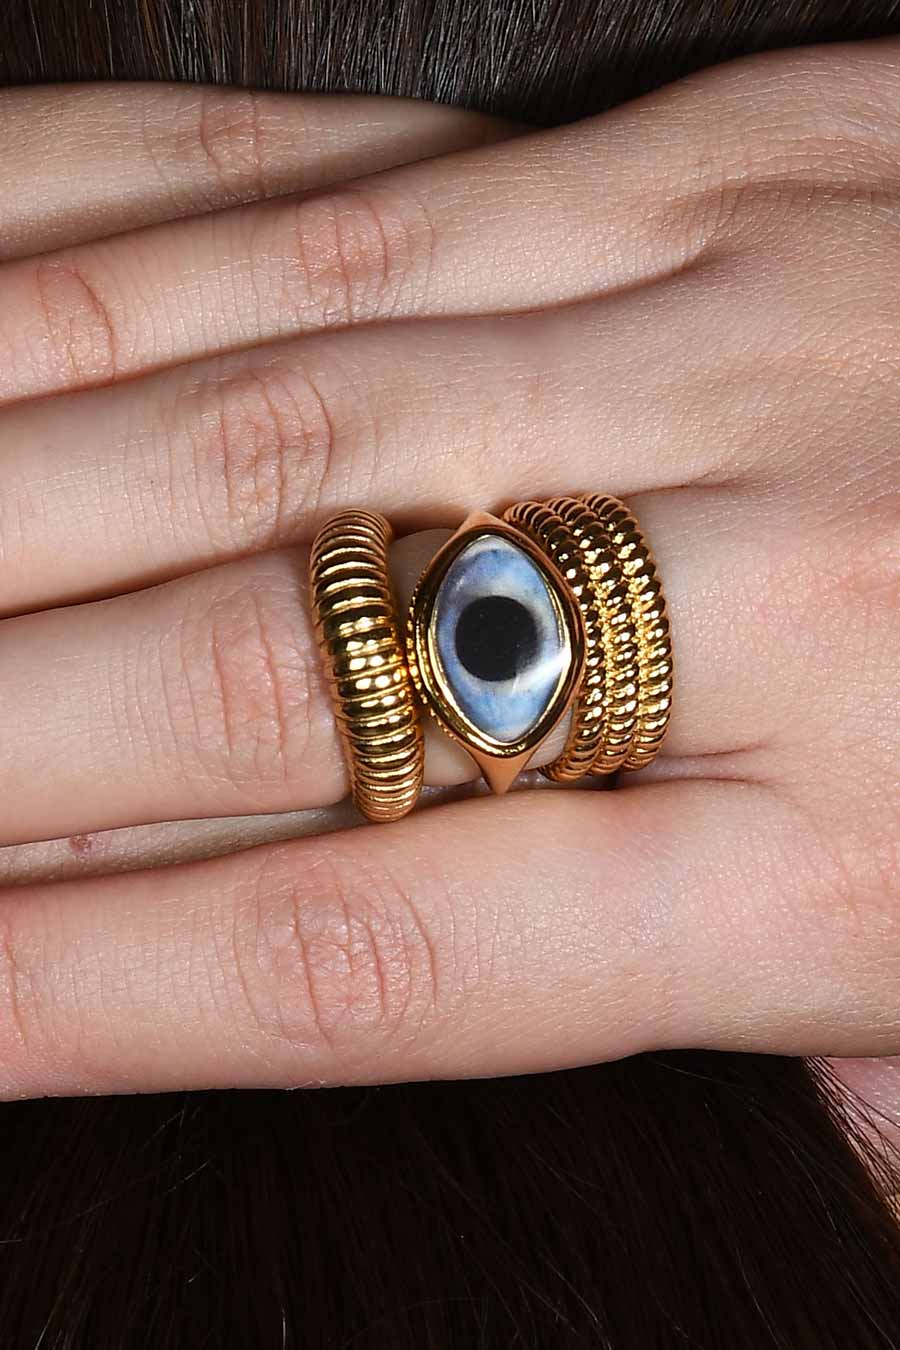 Fancy Gold Ring at Rs 5000 | सोने की अंगूठी in Rajkot | ID: 14611979573